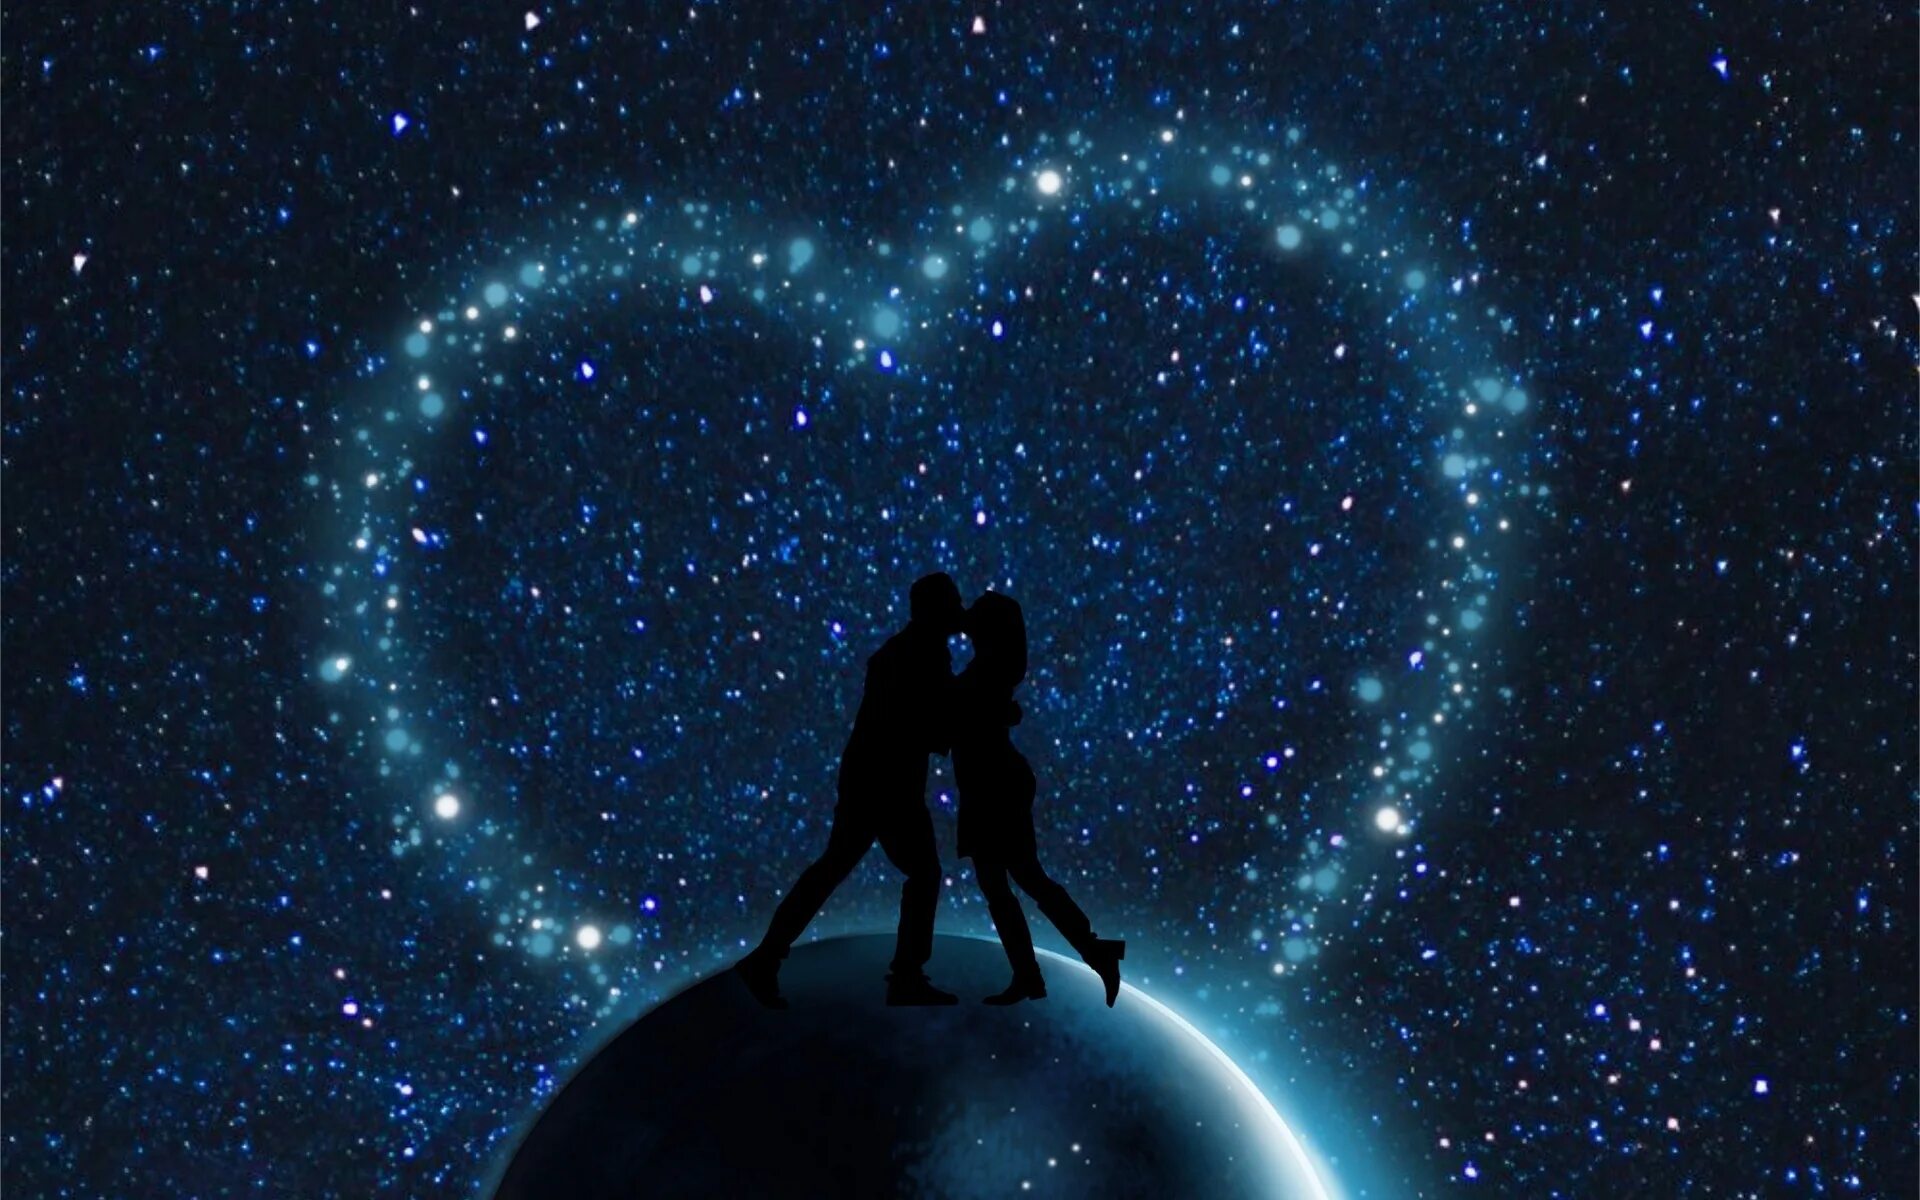 Двое под звездами. Космос любовь. Пара на фоне звездного неба. Вселенная и любовь. Затерявшая в звездах